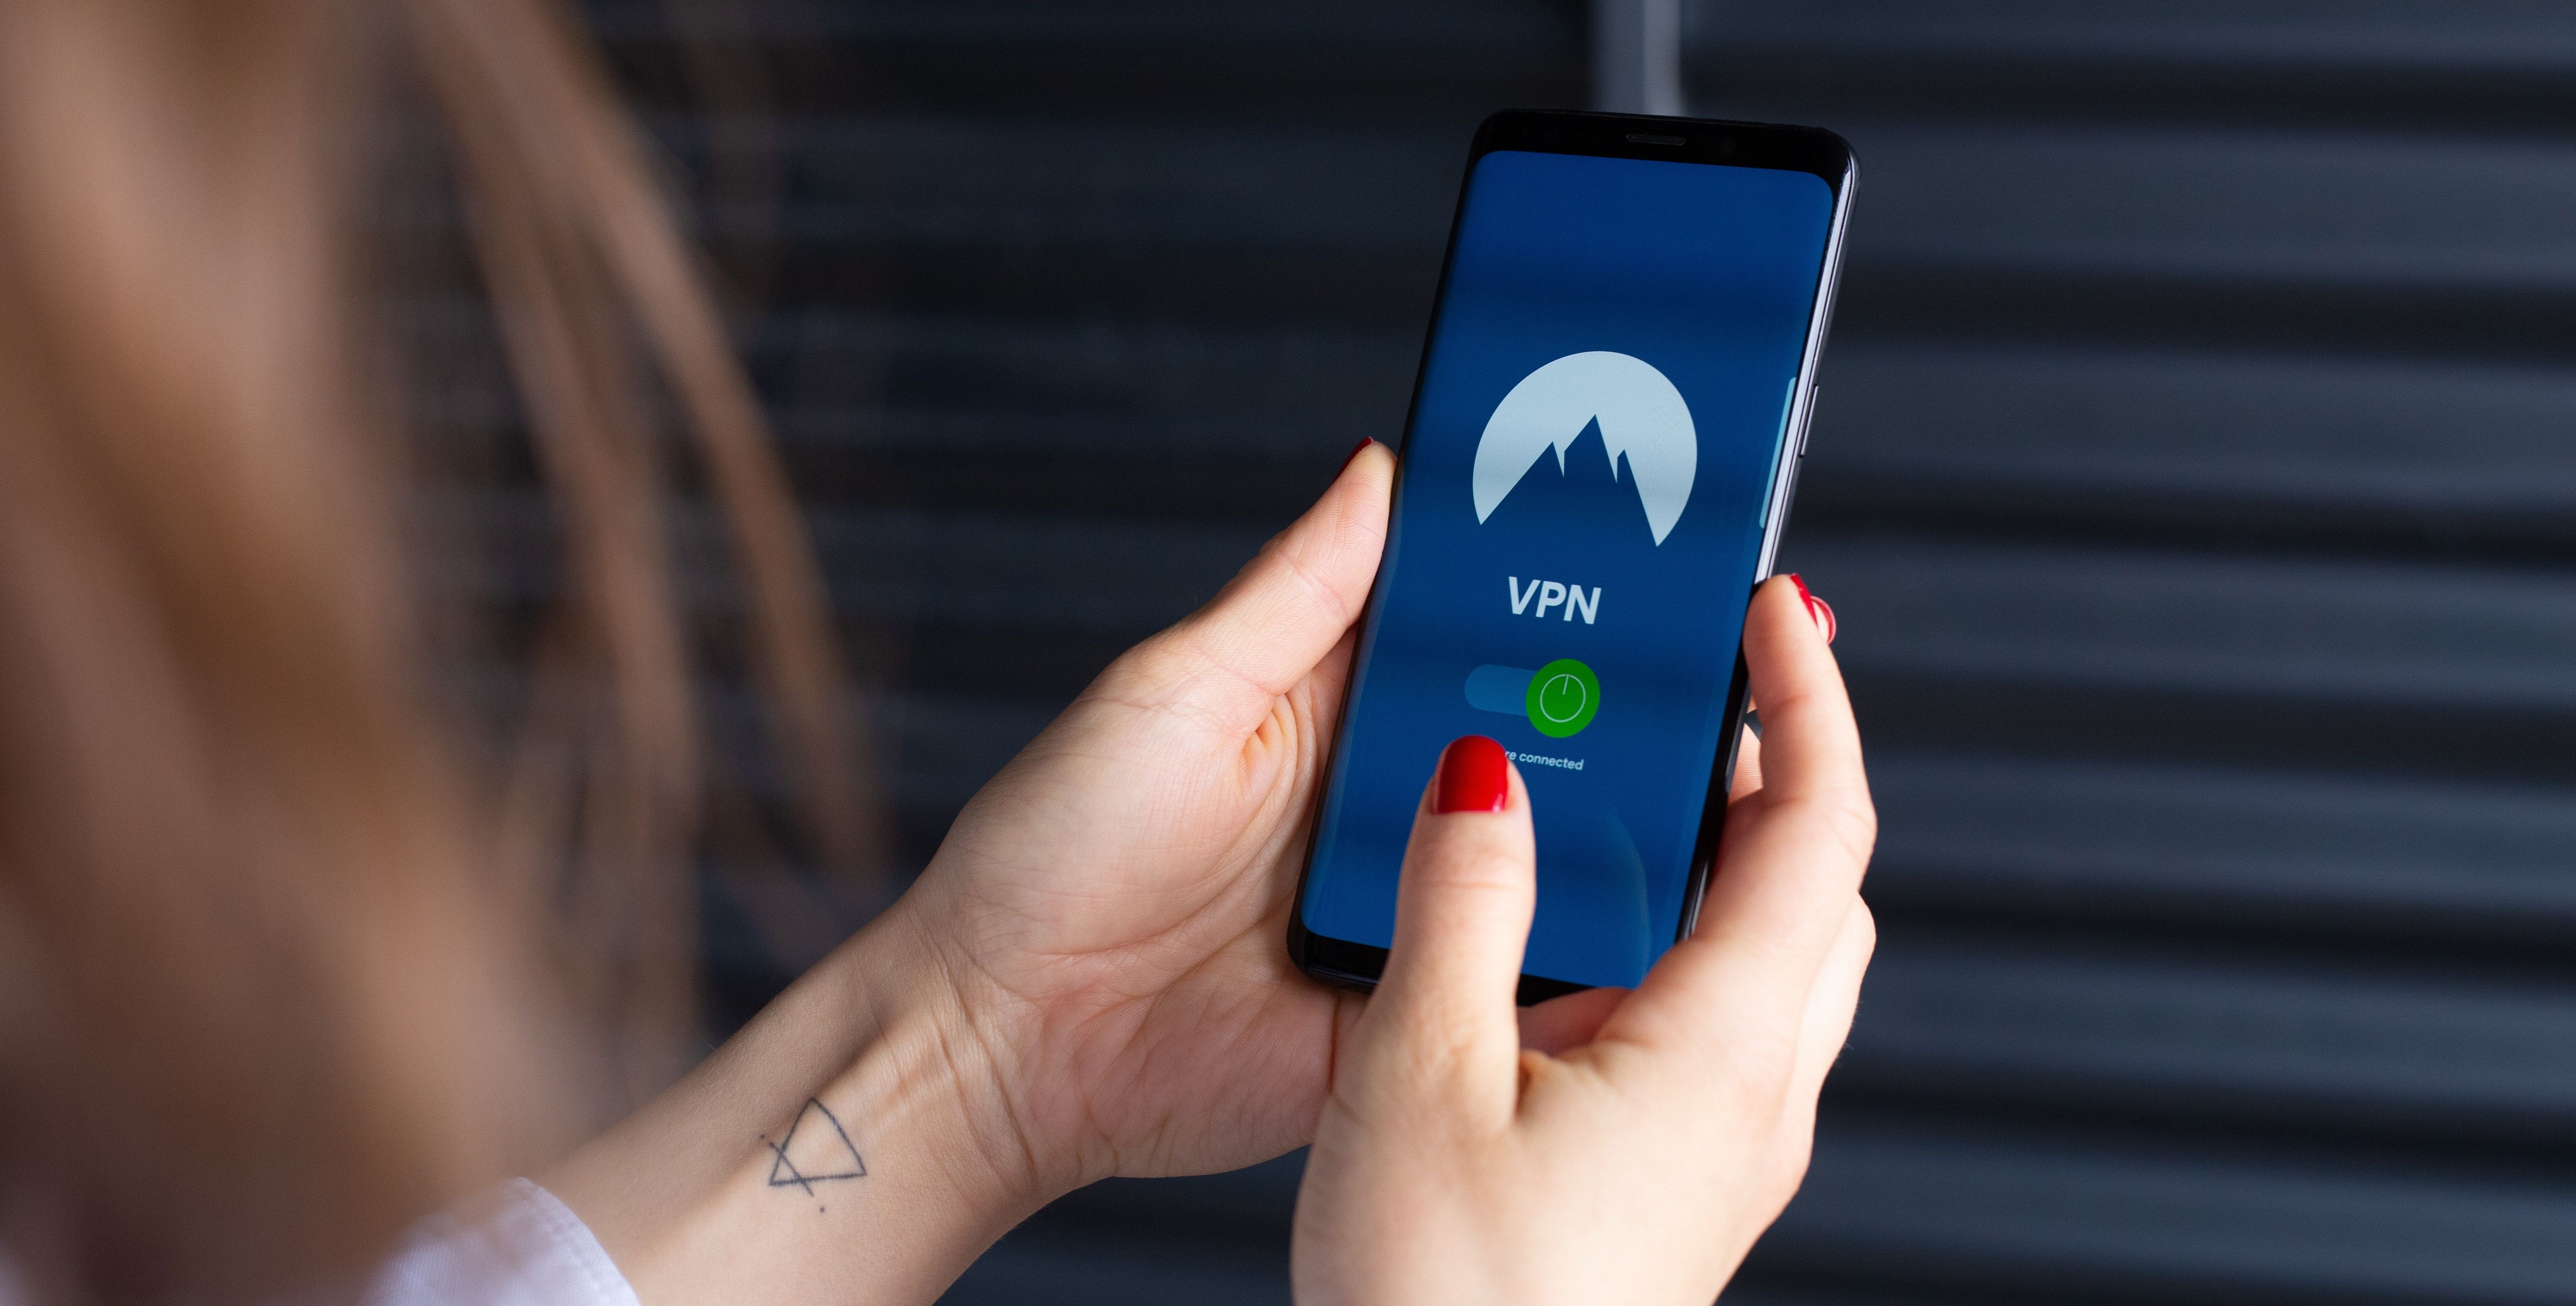 vpn app open on smartphone